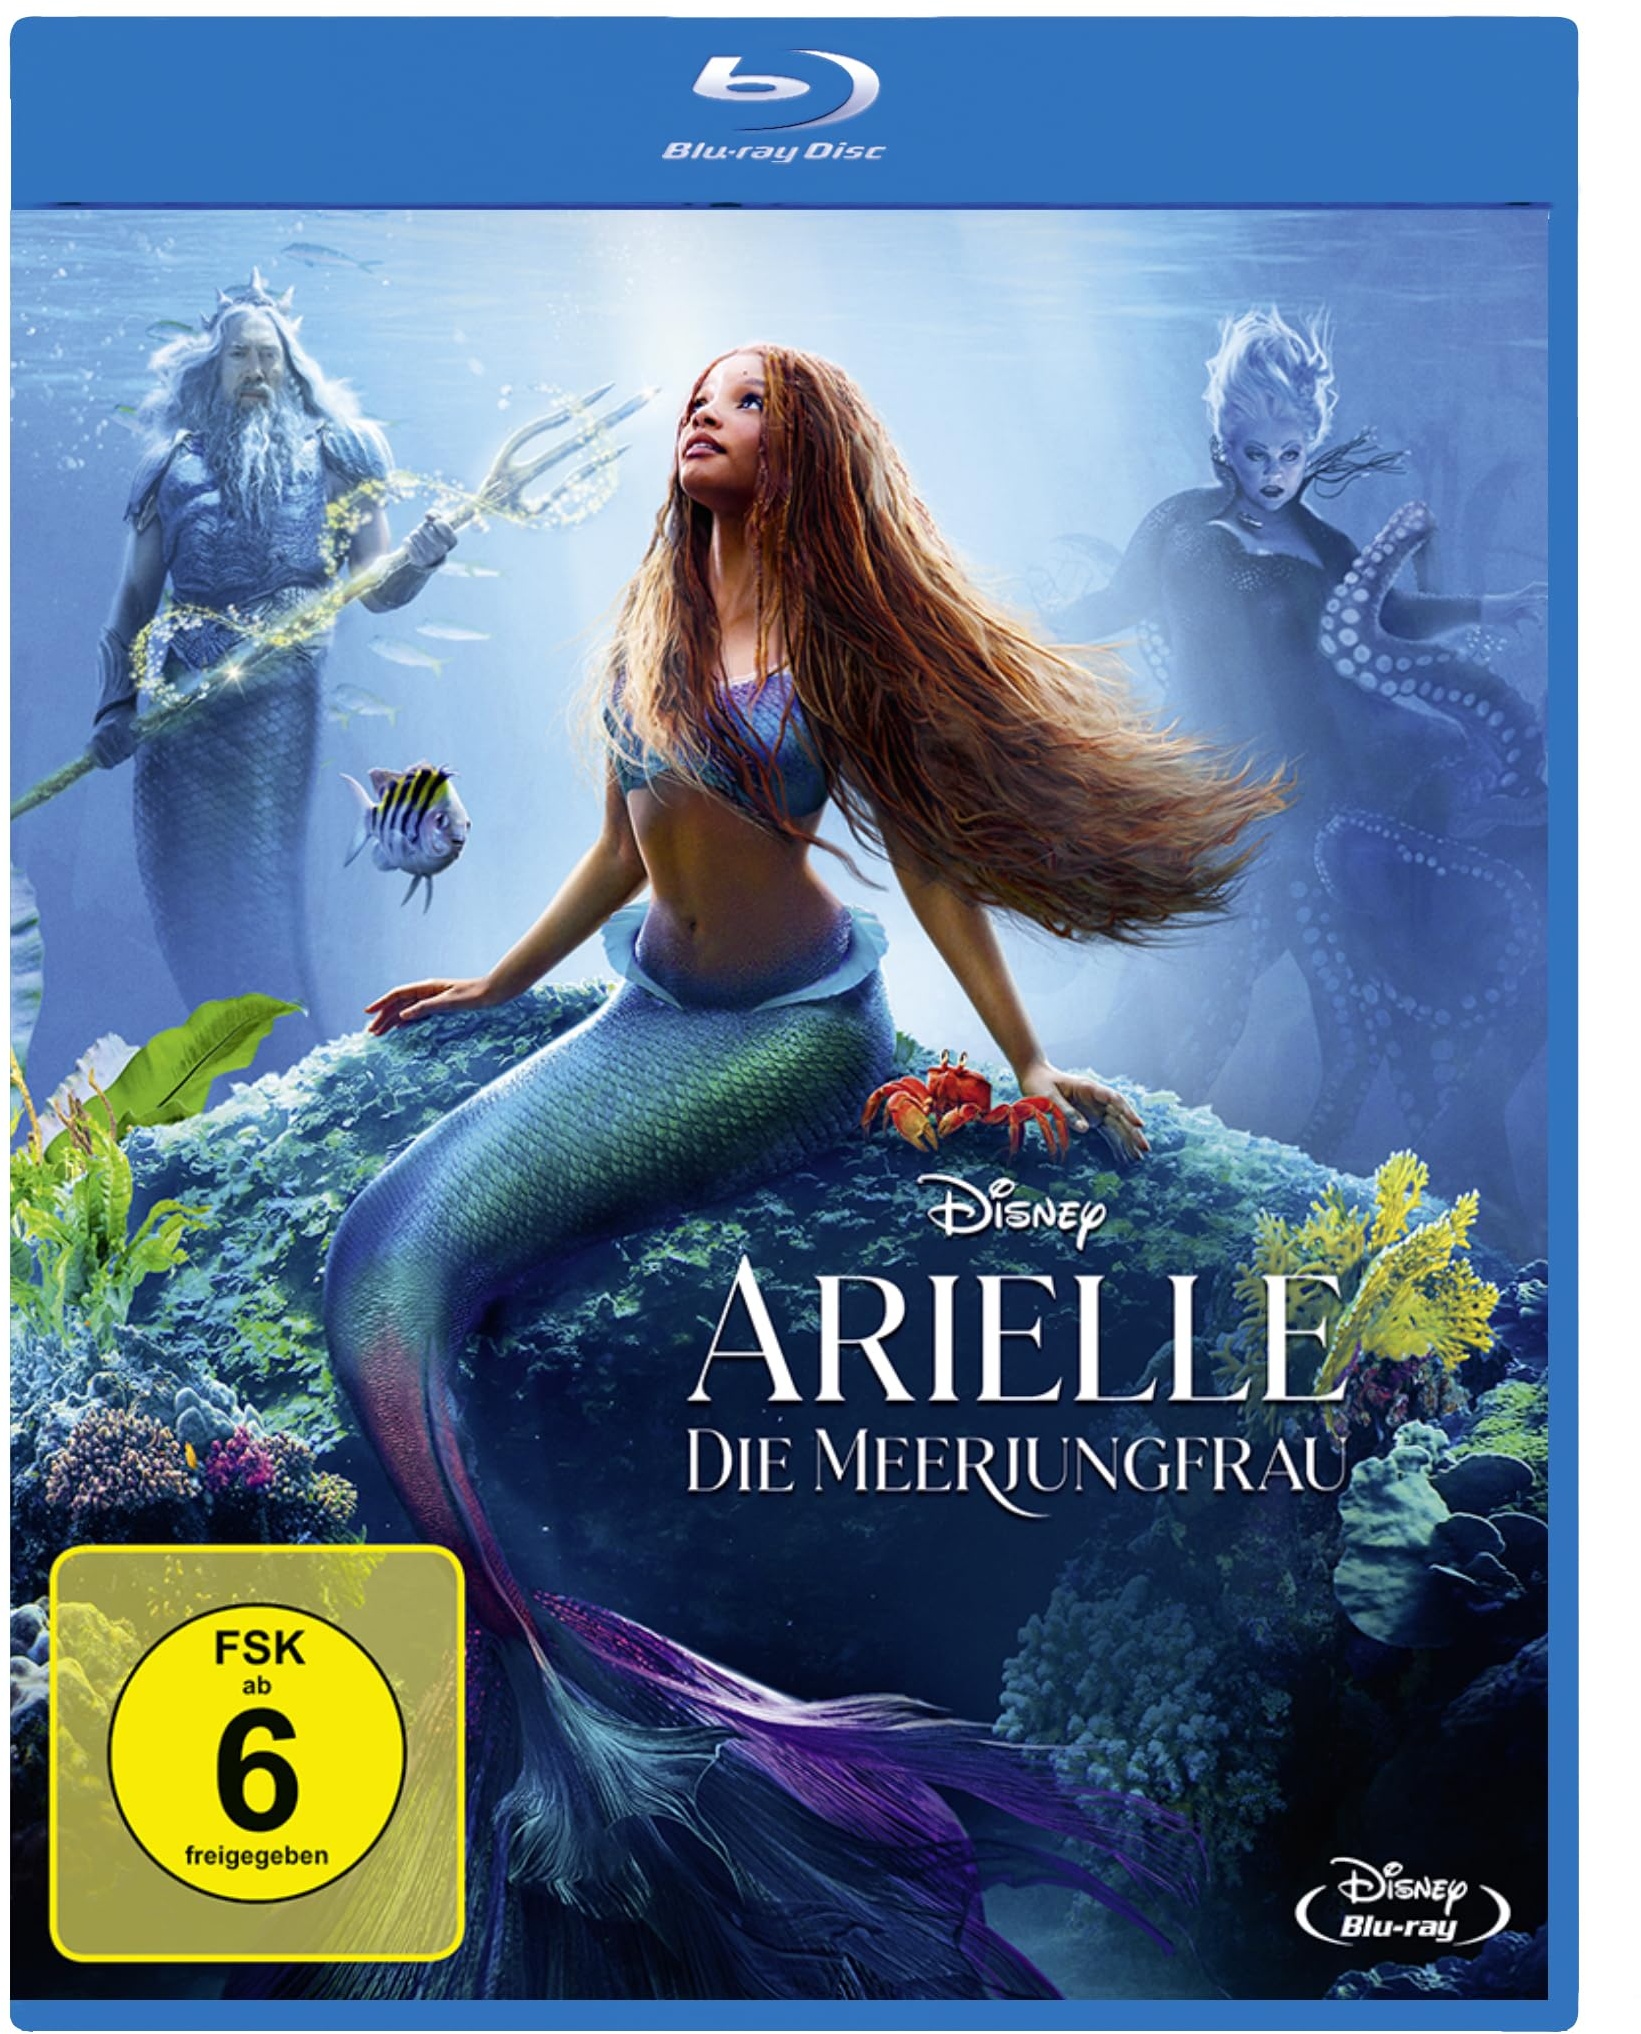 Arielle, die Meerjungfrau [Blu-ray] (Neu differenzbesteuert)